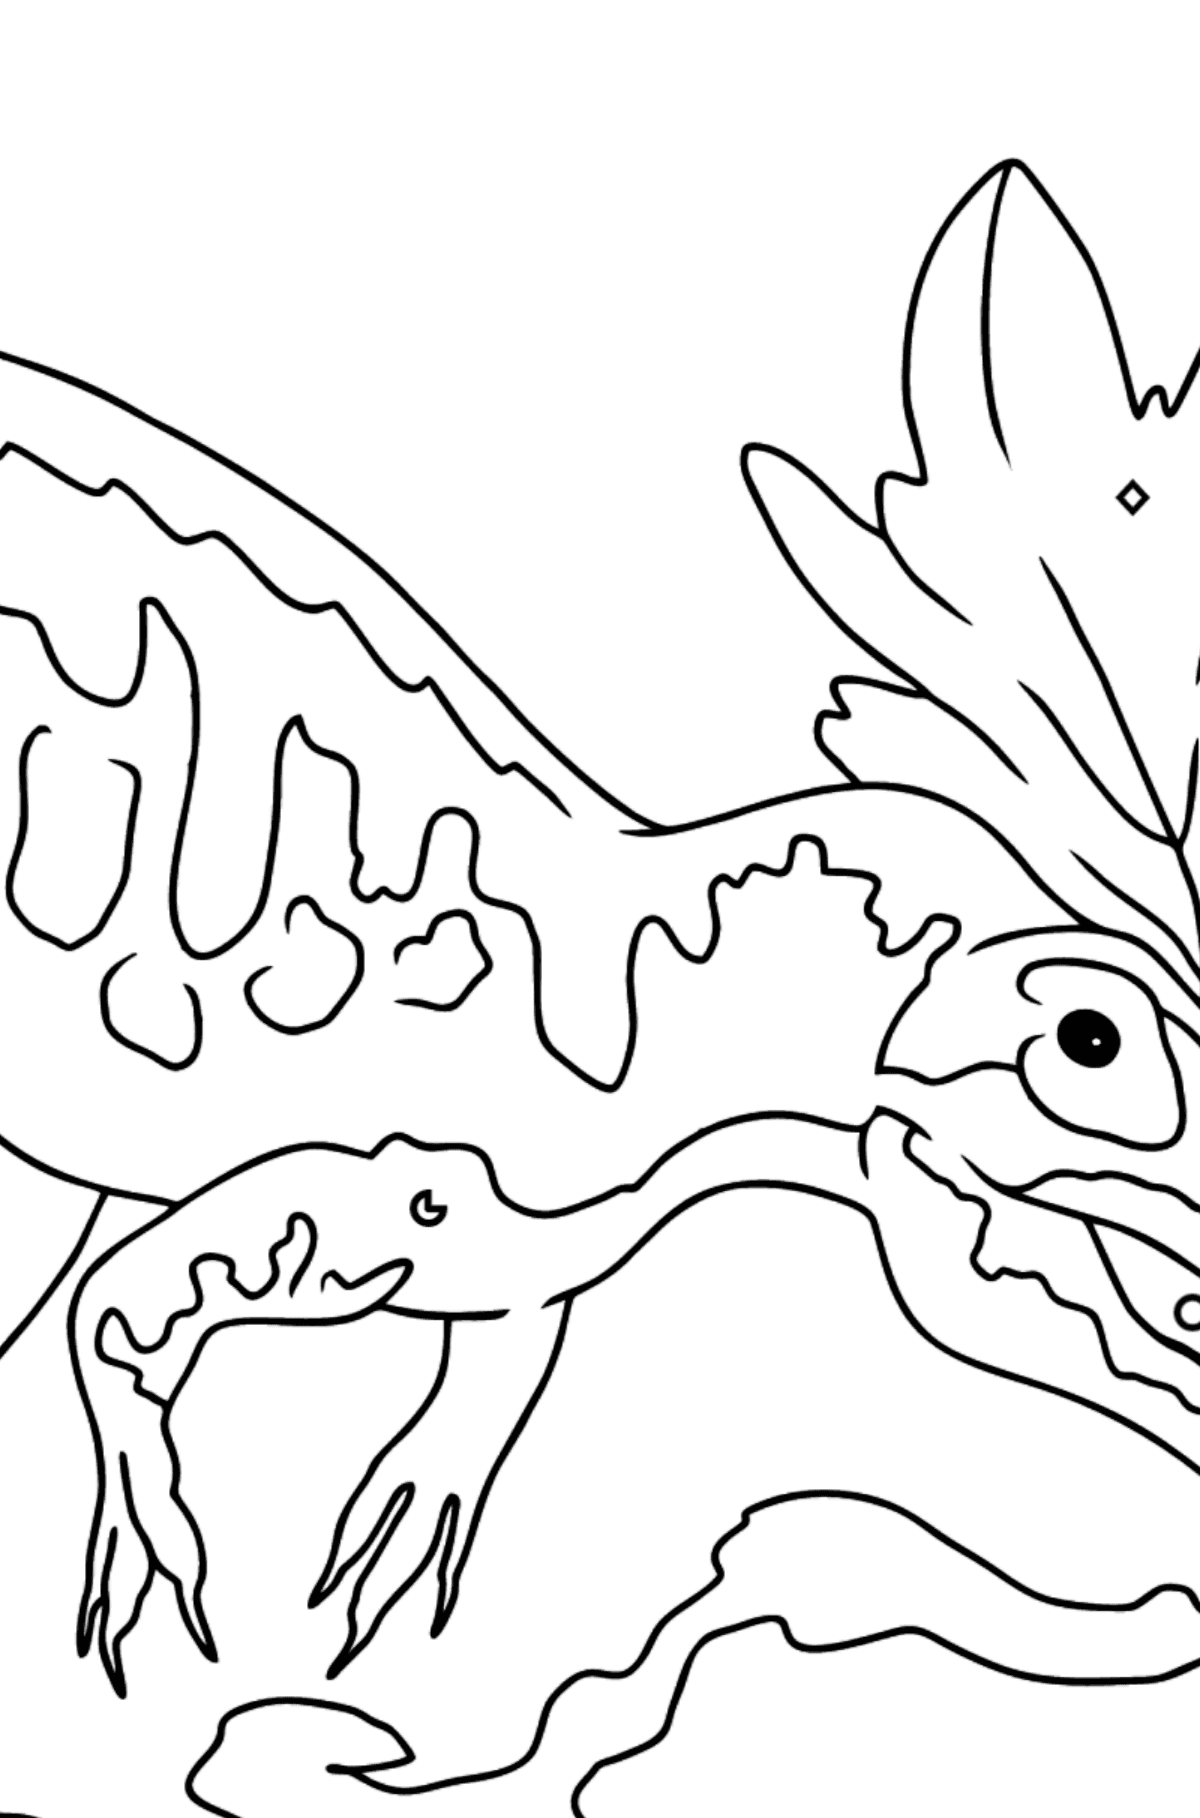 Dibujo para colorear de alosaurio (fácil) - Colorear por Formas Geométricas para Niños